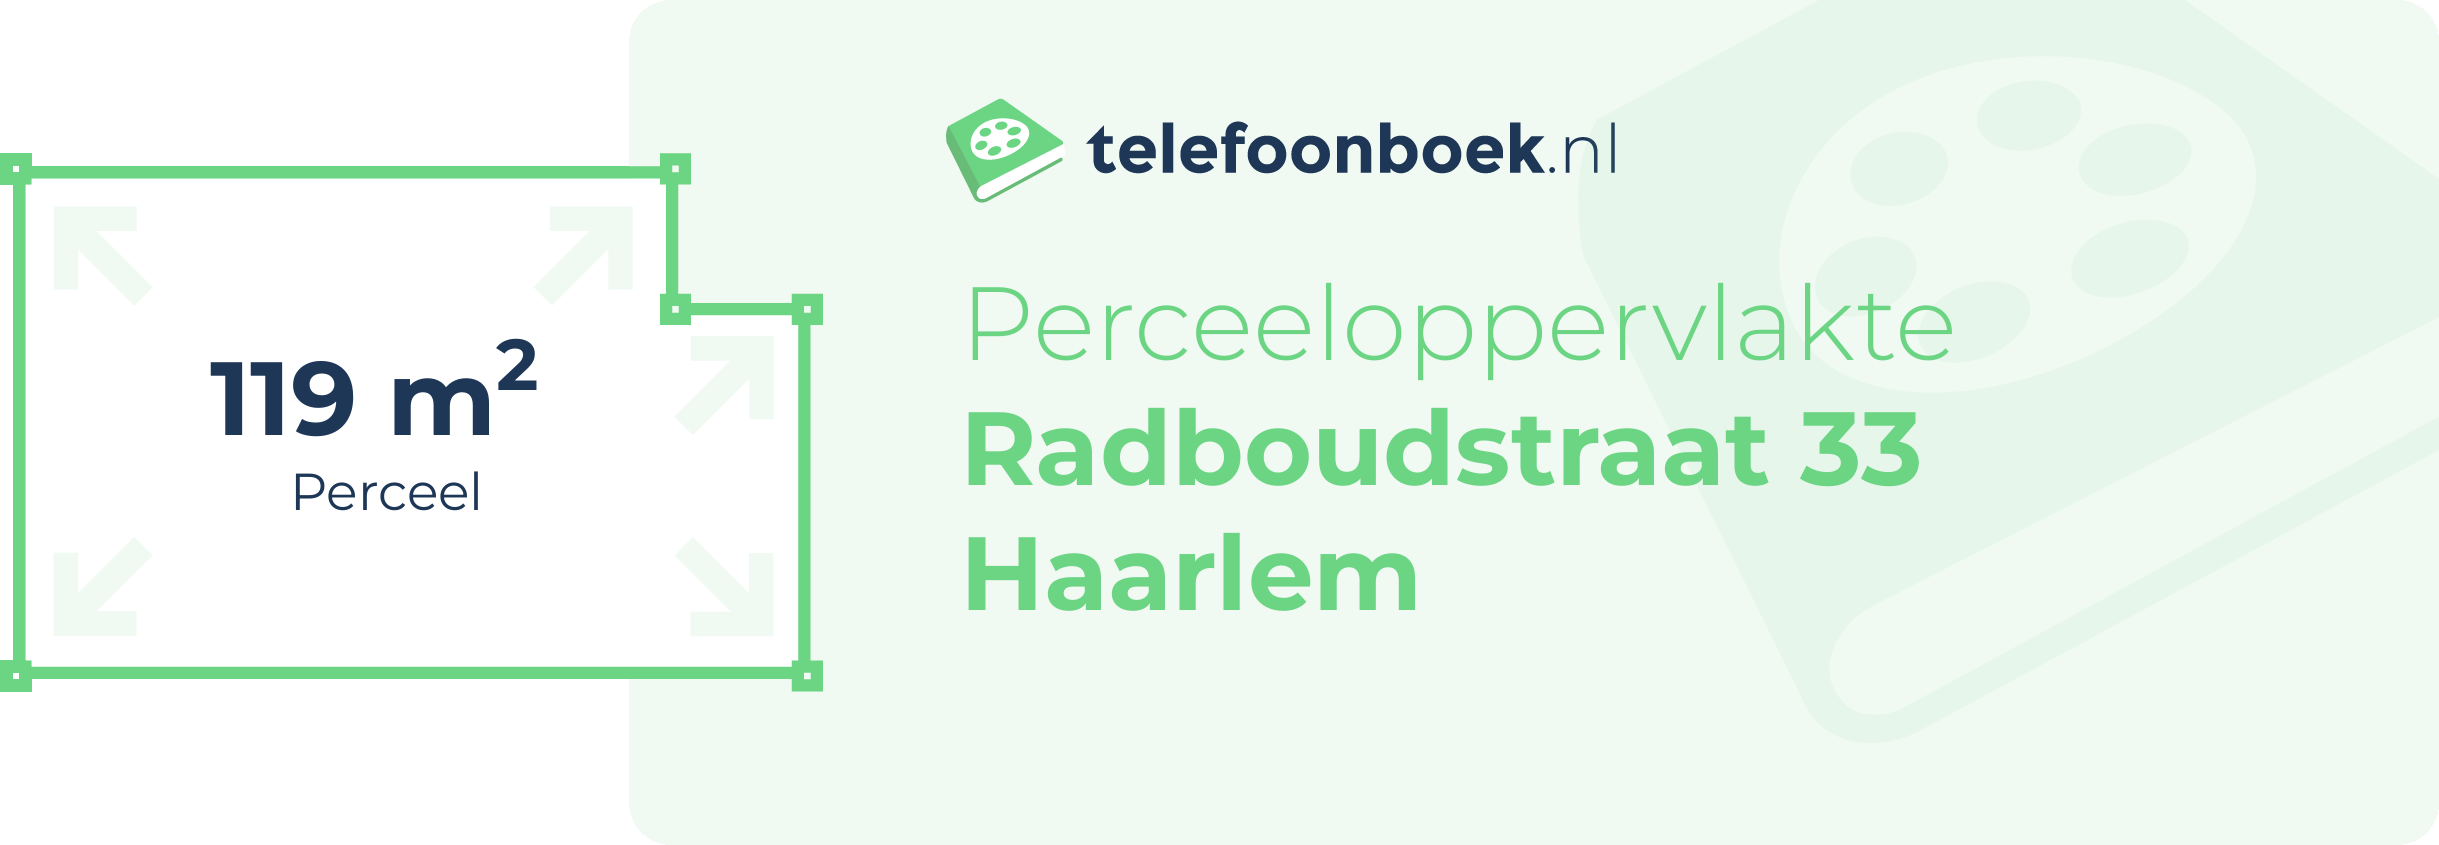 Perceeloppervlakte Radboudstraat 33 Haarlem